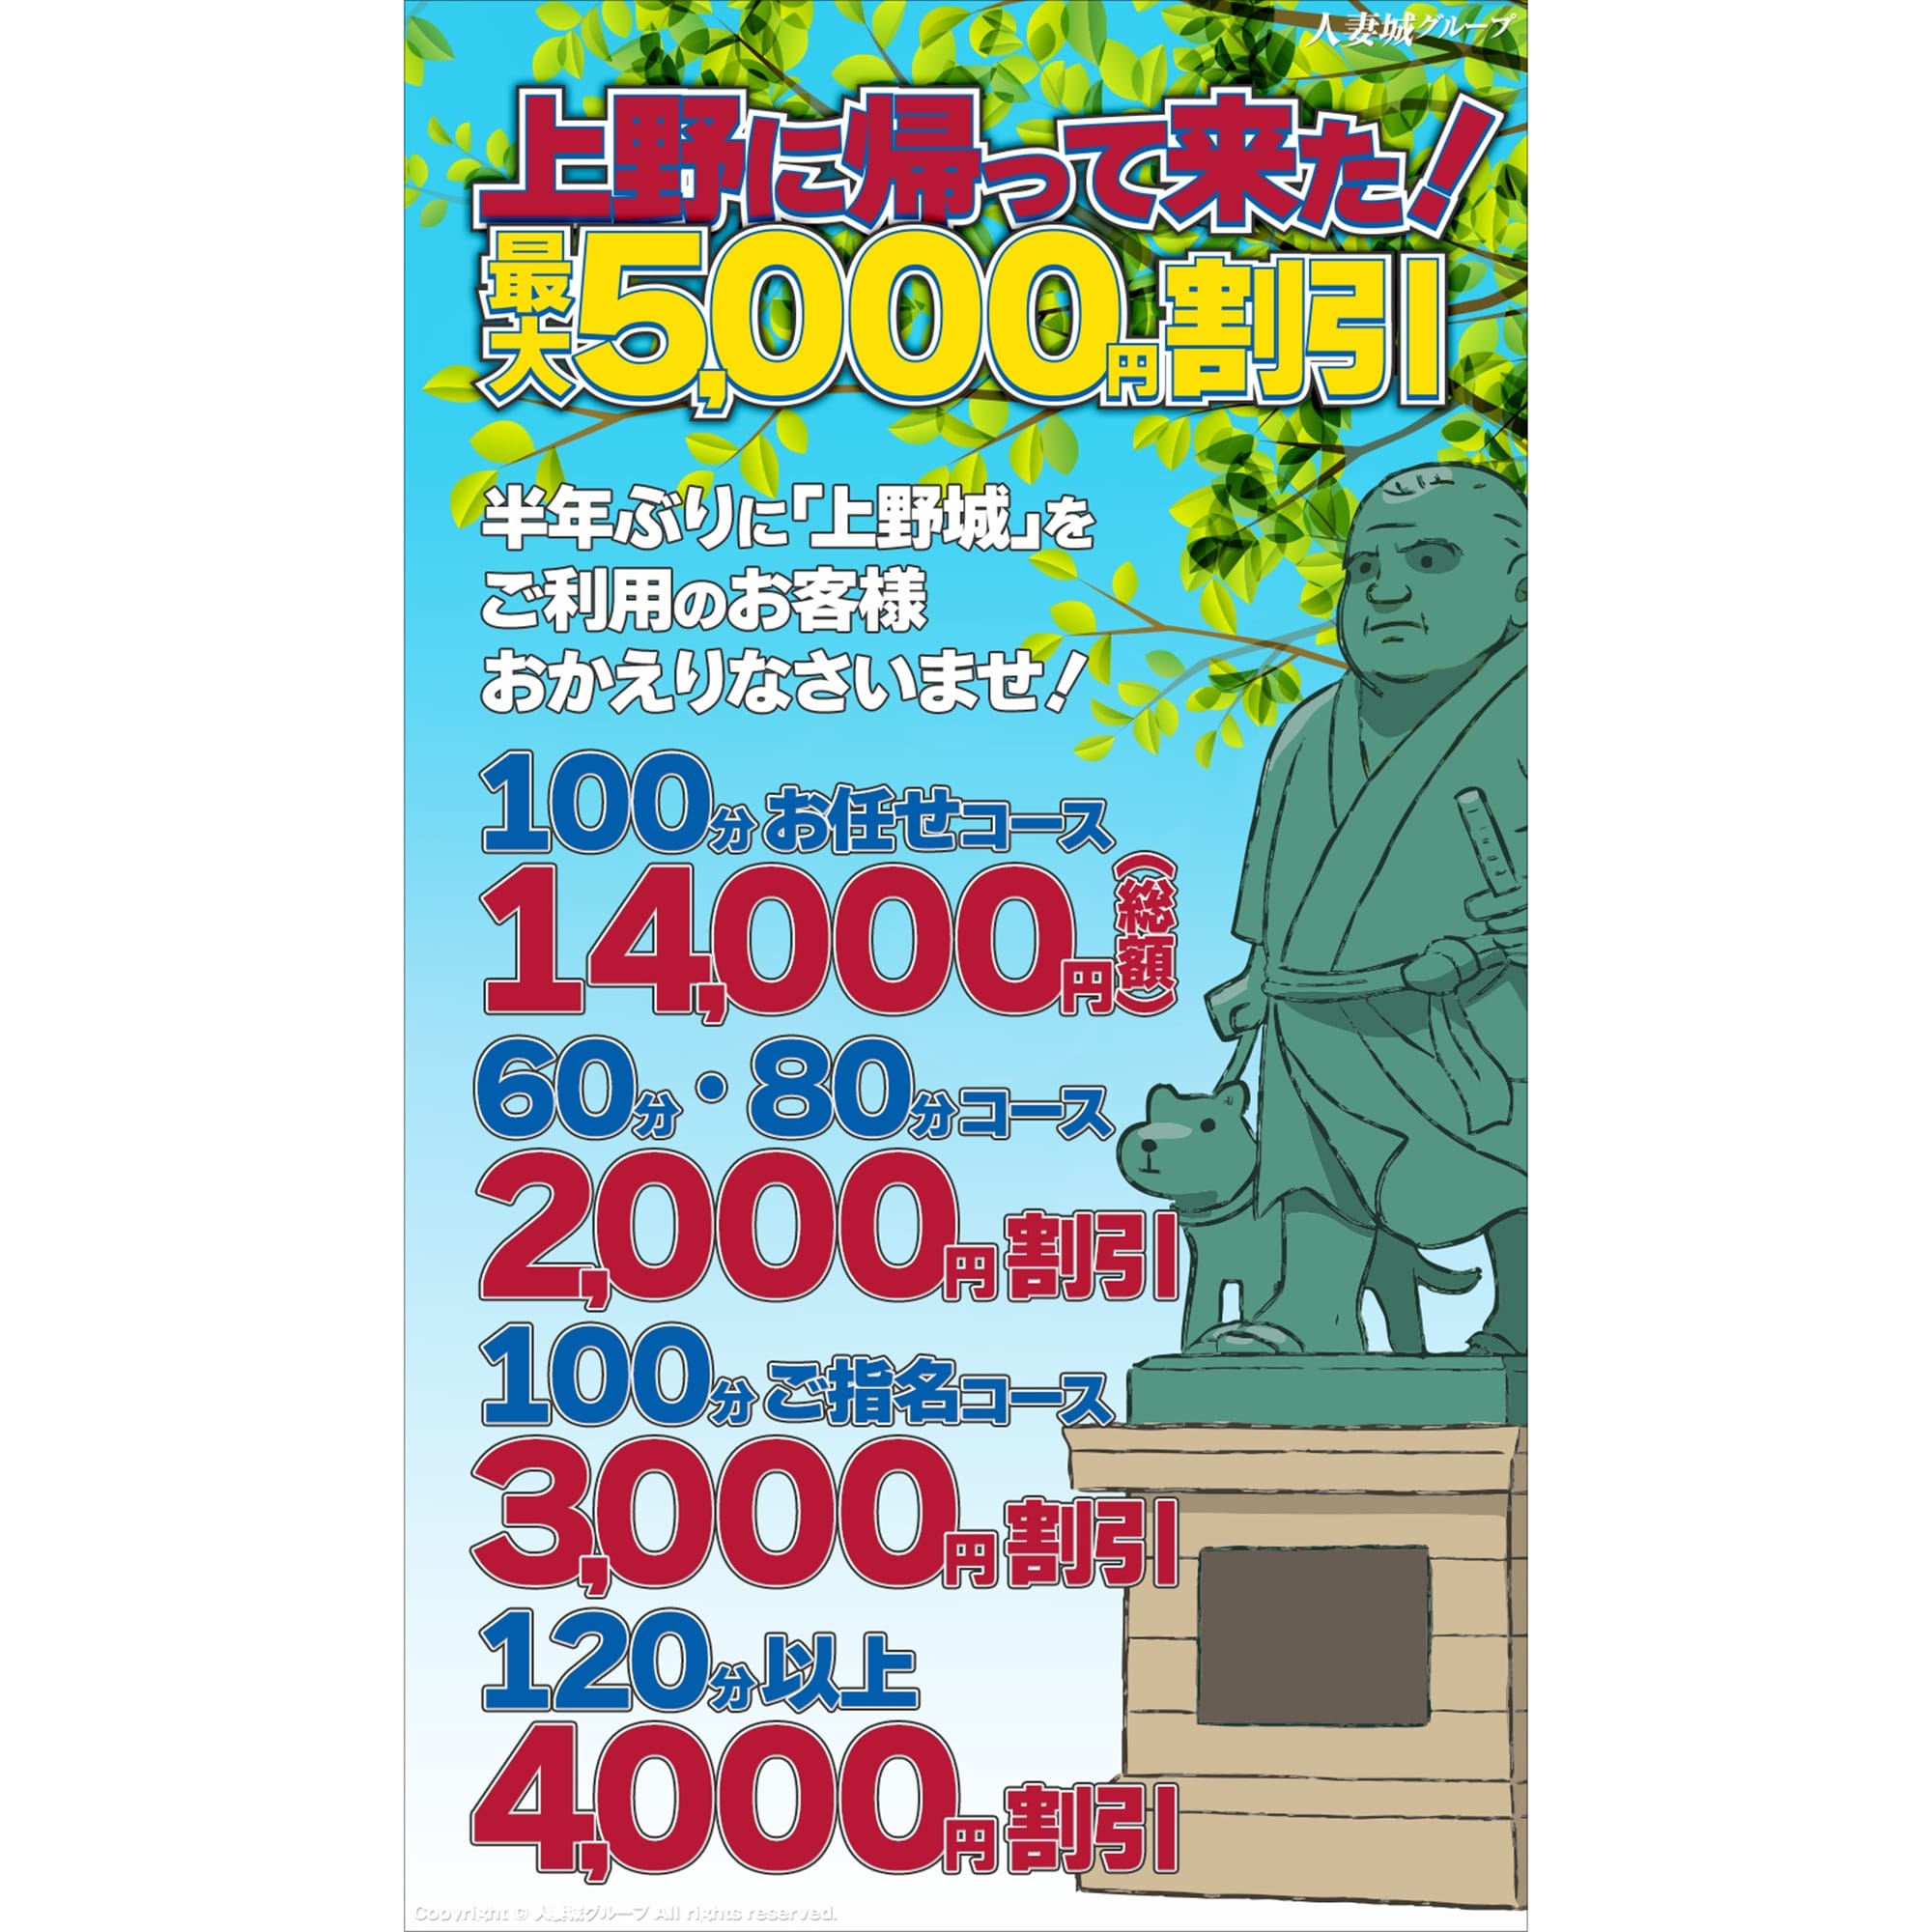 「上野に帰って来た!」05/22(水) 11:31 | 上野人妻城のお得なニュース